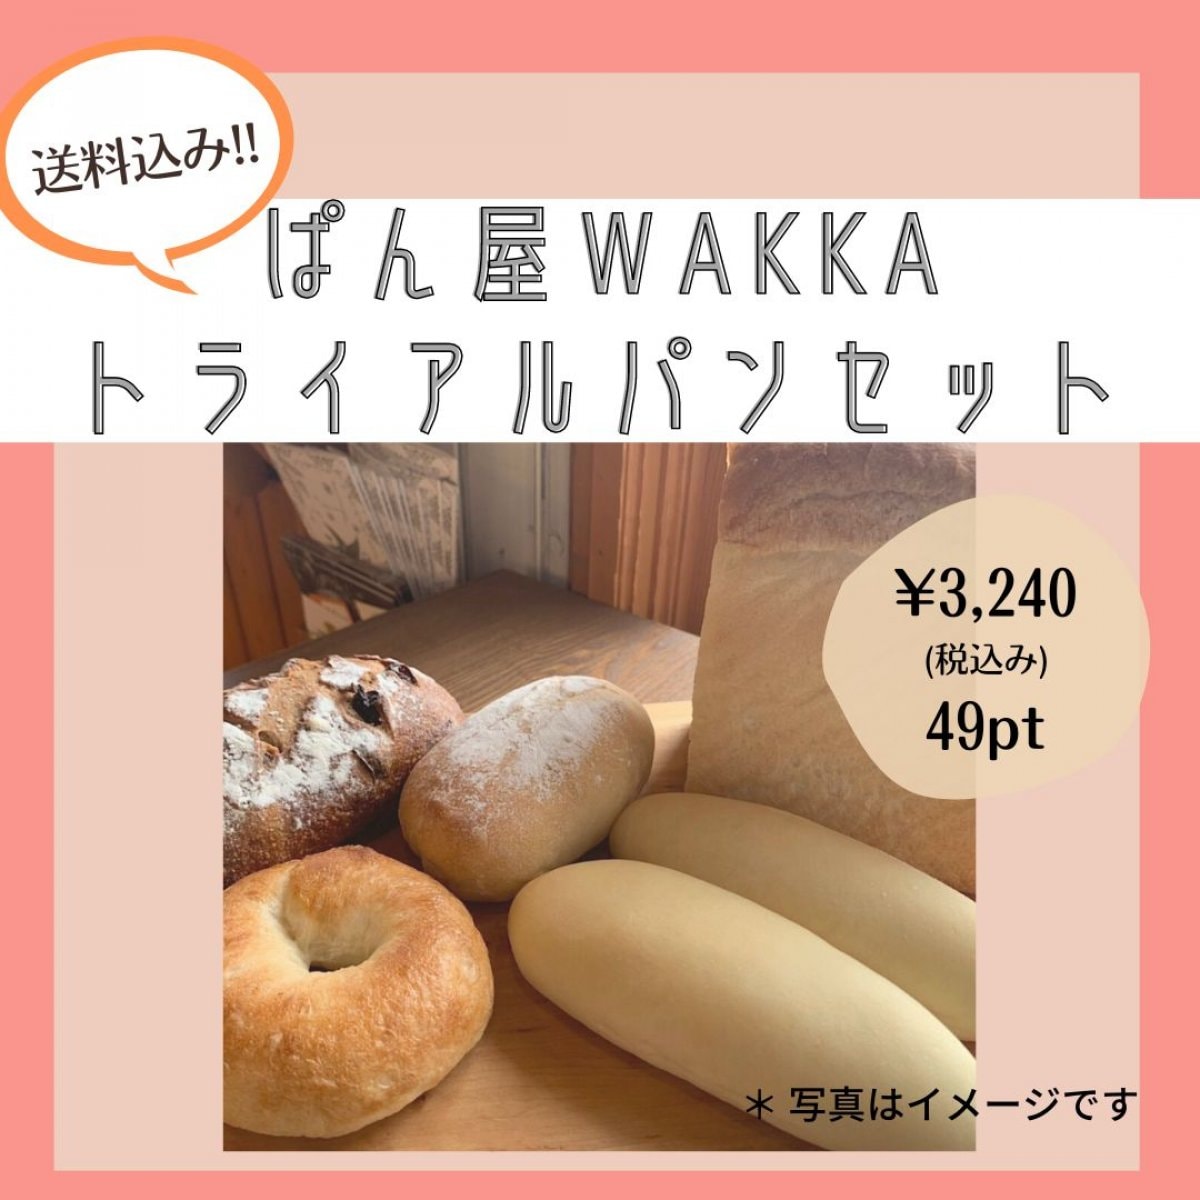 【送料込み】ぱん屋wakkaのお試しパンセット / 北海道小麦粉と天然酵母を使用した無添加パンセット